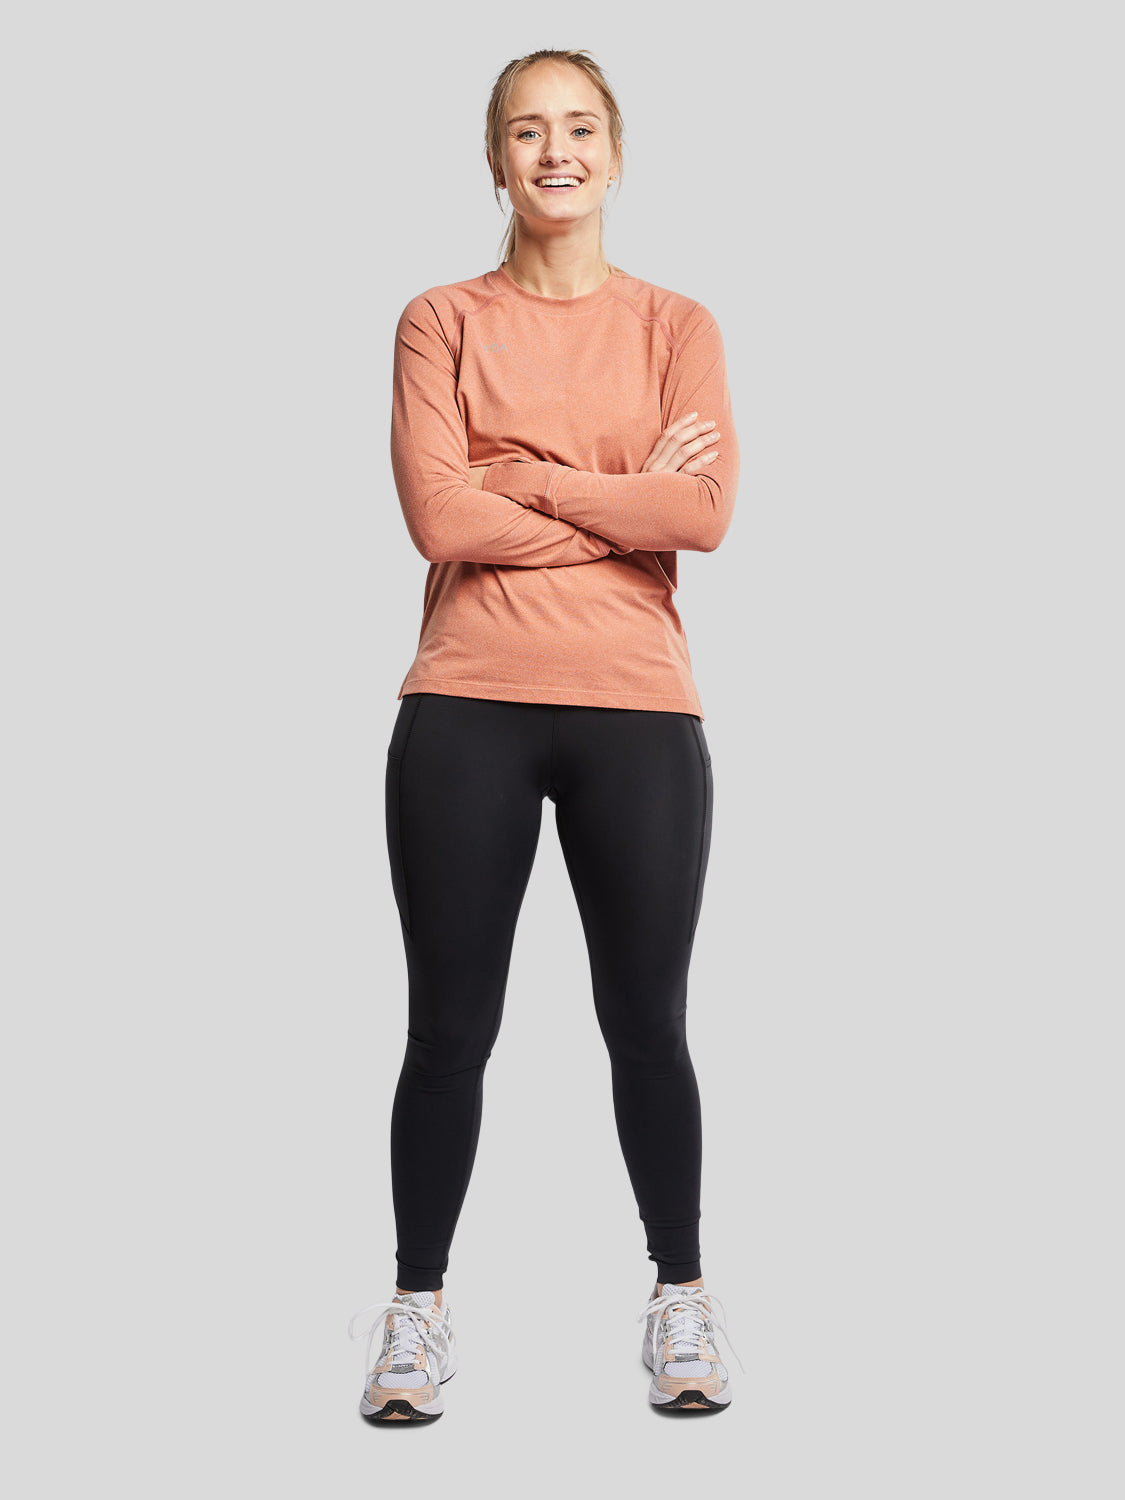 kvinde forfra med træningstrøje i farven rust og sorte tights